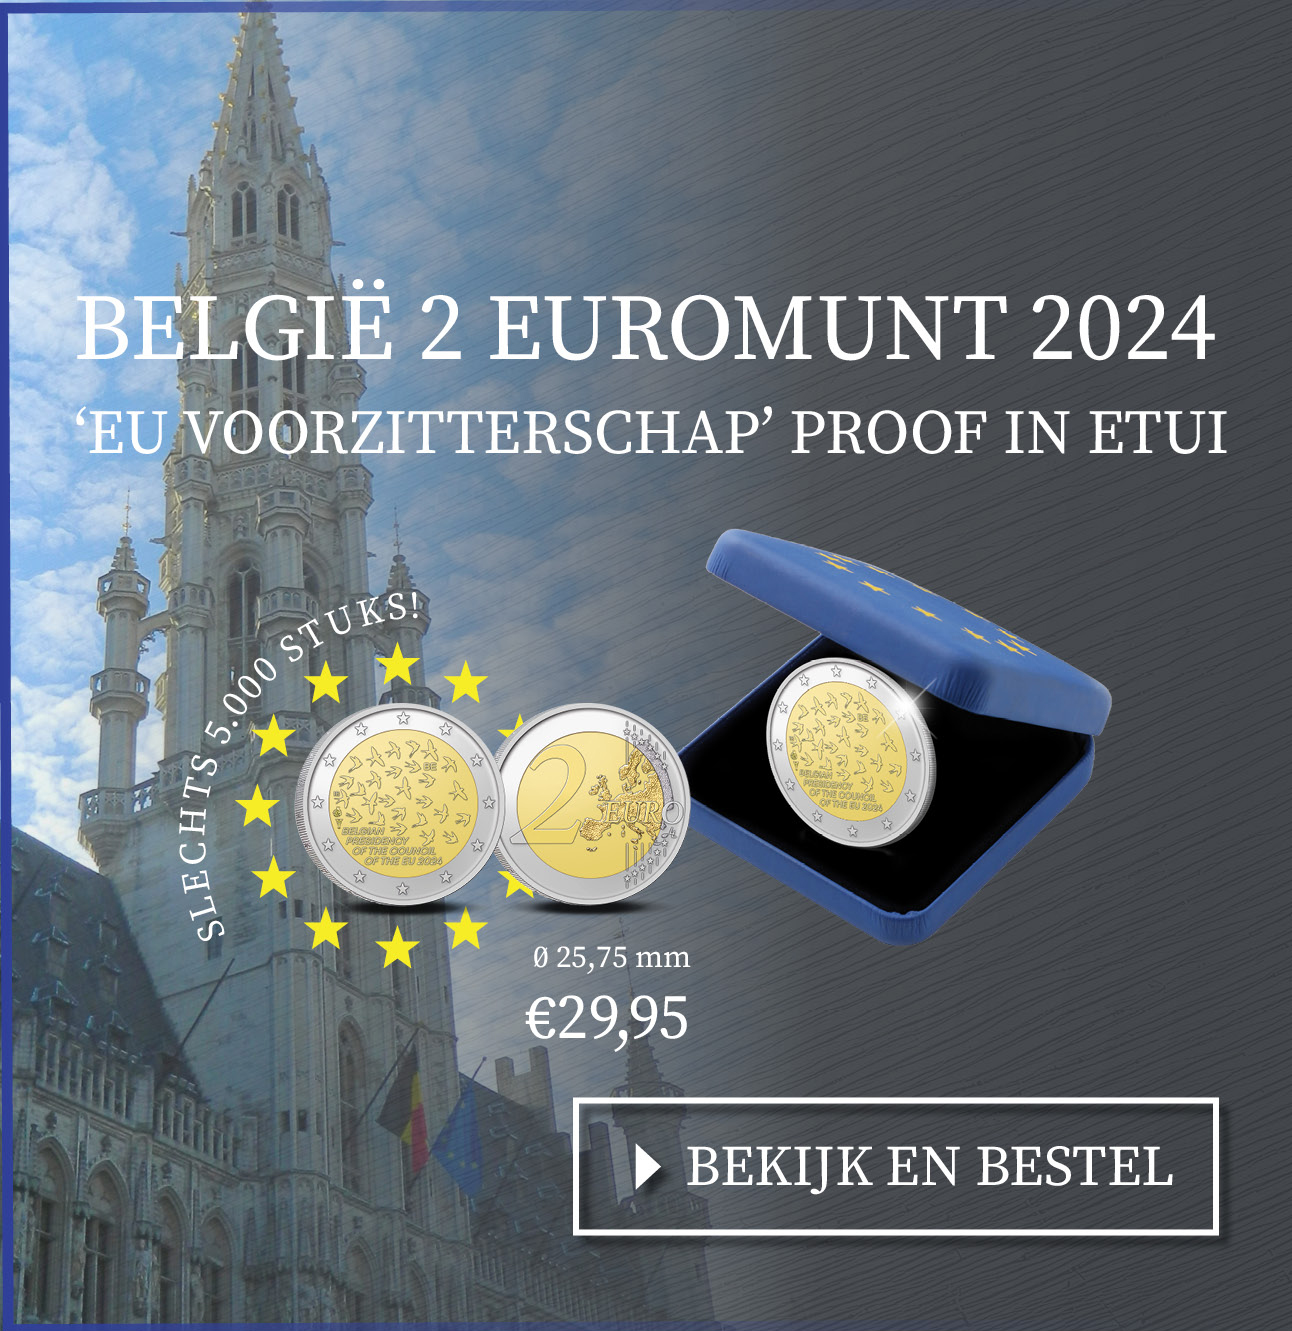 Bekijk en bestel: België 2 euromunt 2024 ‘EU Voorzitterschap’ Proof in etui